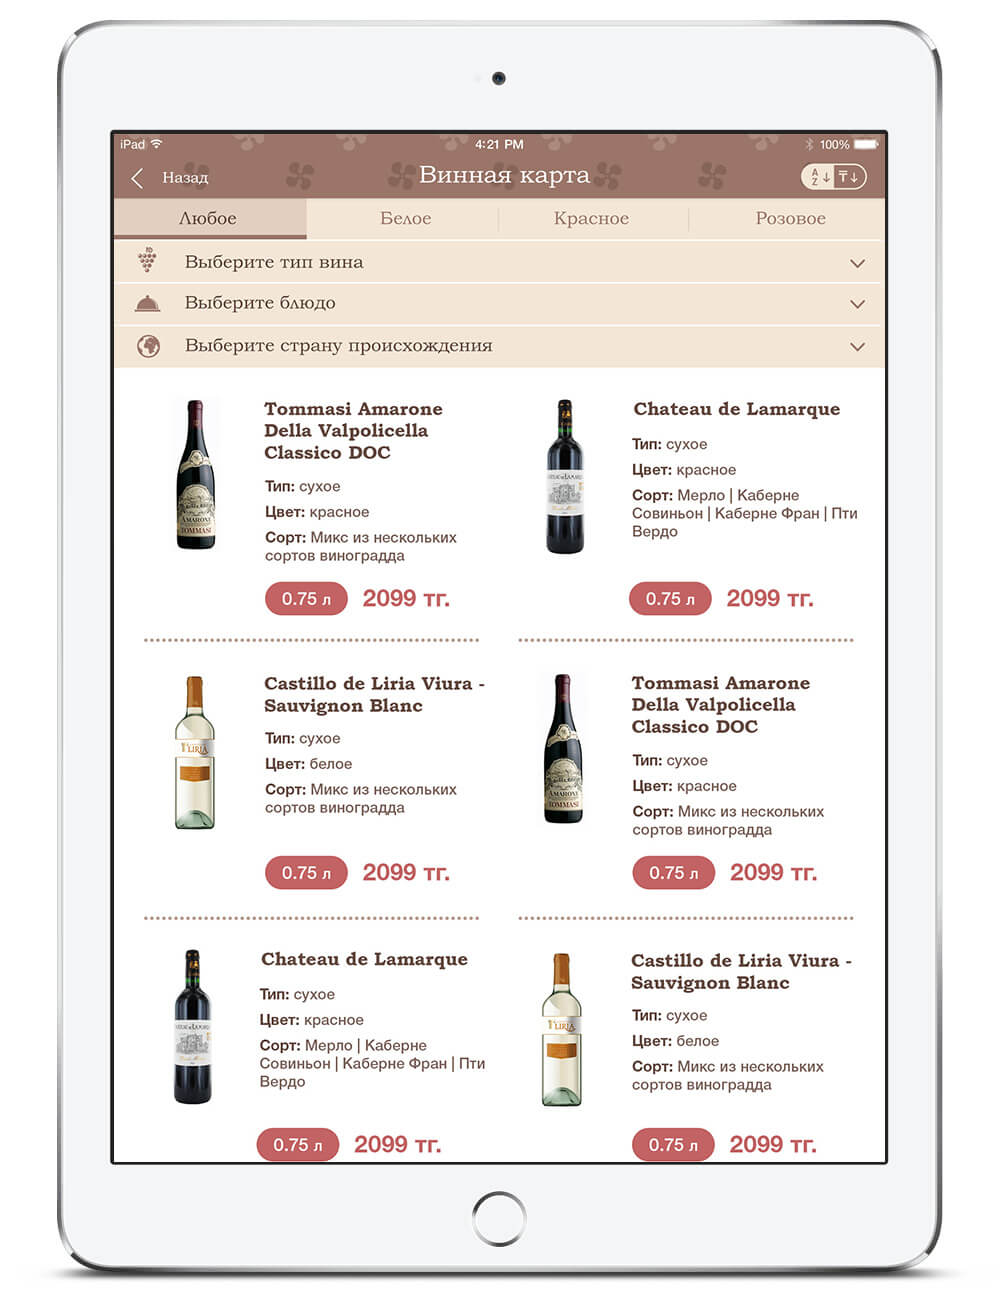 Приложение для iPad mini с каталогом вин, представленных в городском кафе Плюшкин